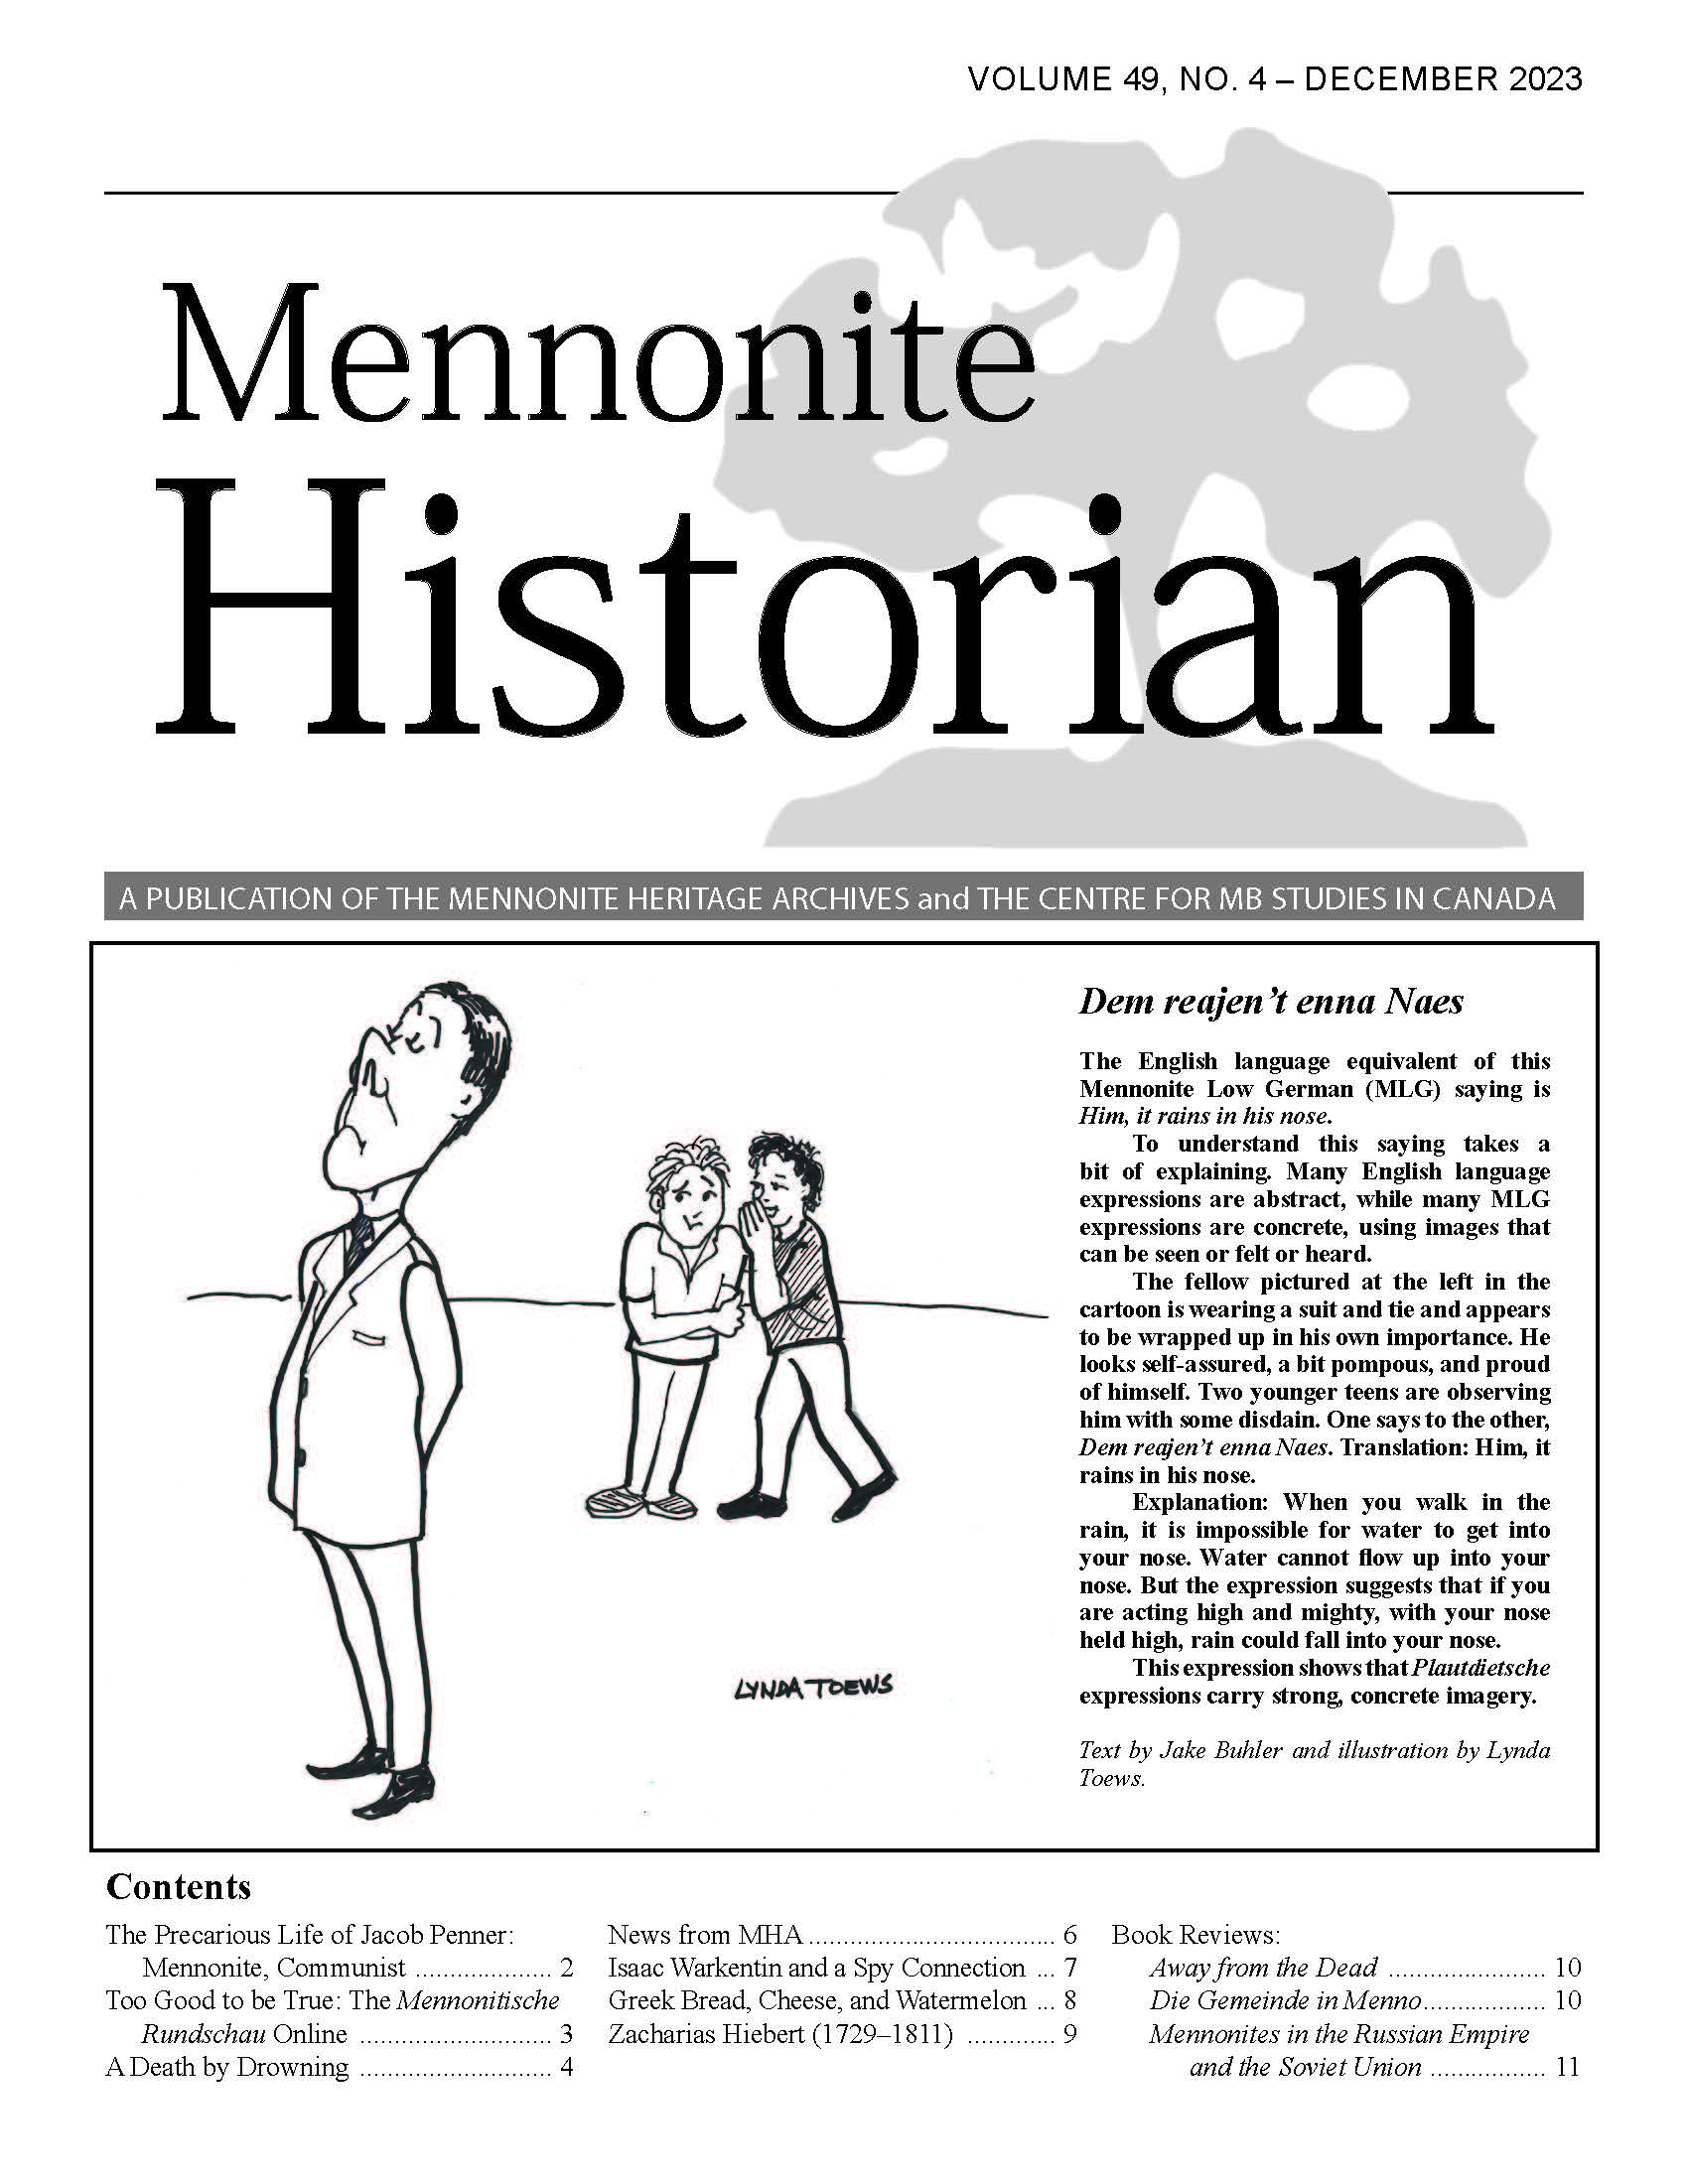 Mennonite Historian (December 2023)